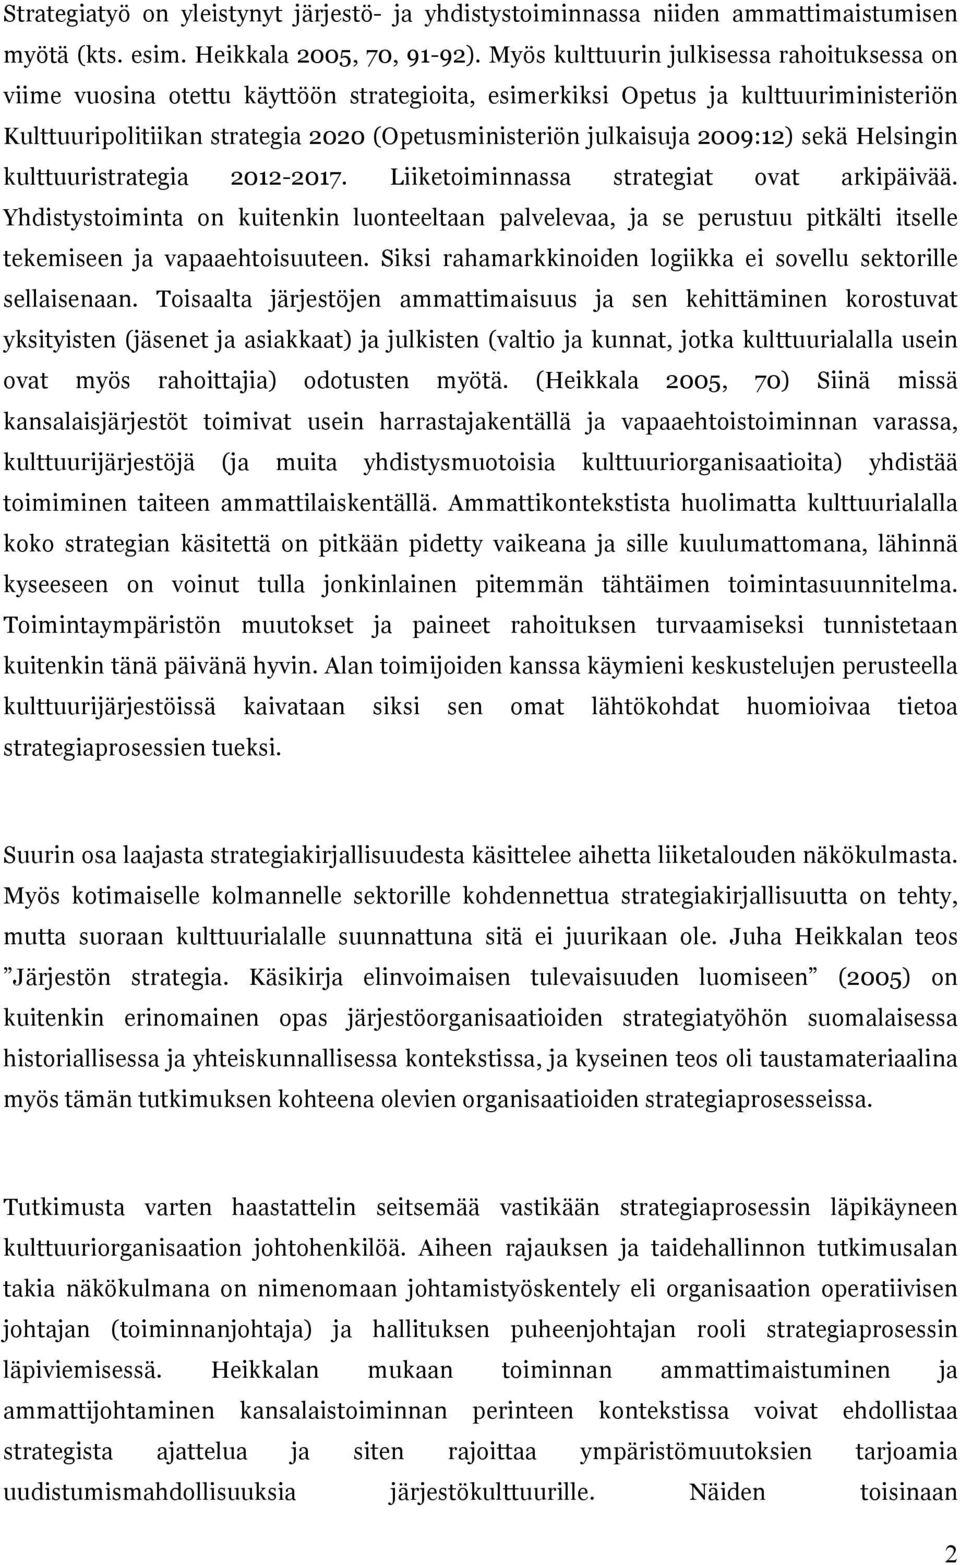 2009:12) sekä Helsingin kulttuuristrategia 2012-2017. Liiketoiminnassa strategiat ovat arkipäivää.